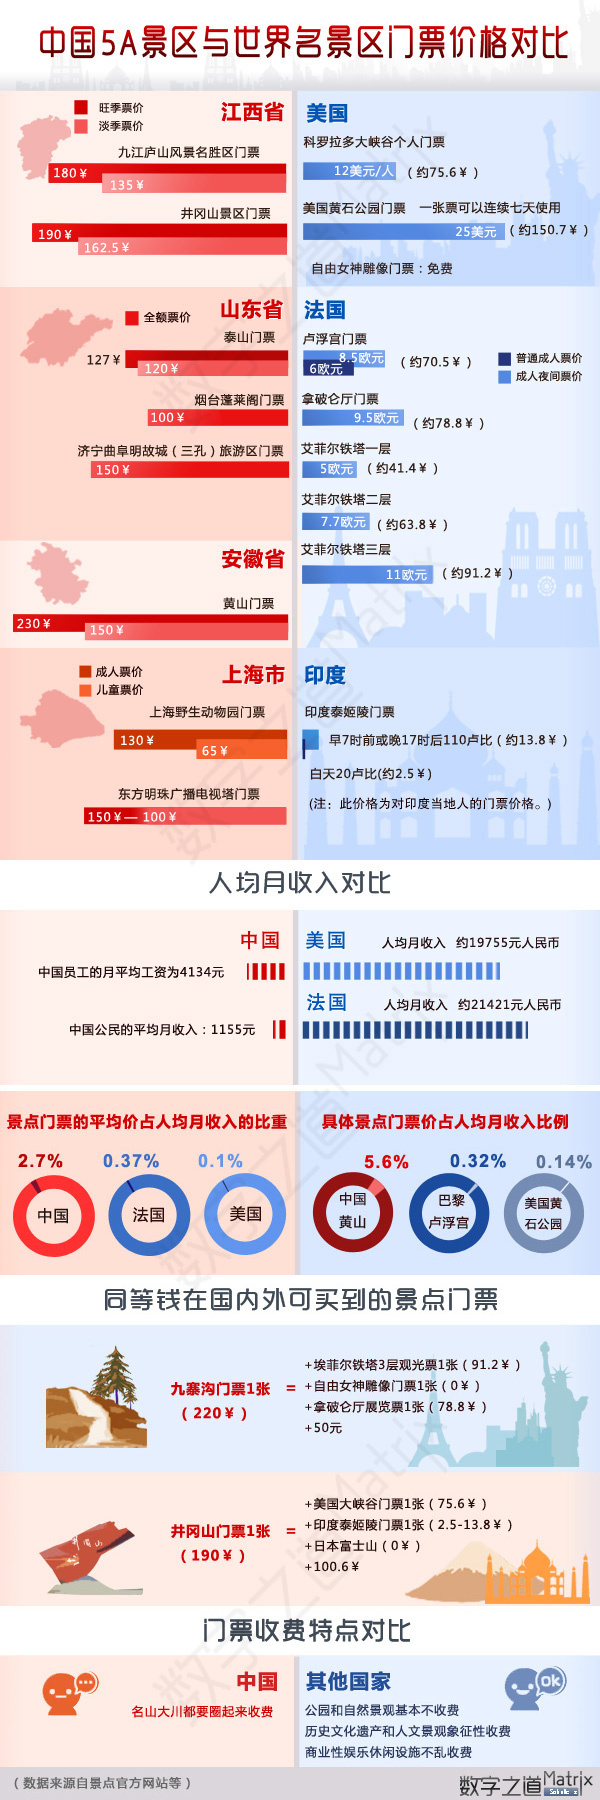 中国5A景区与世界各大景区门票价格对比